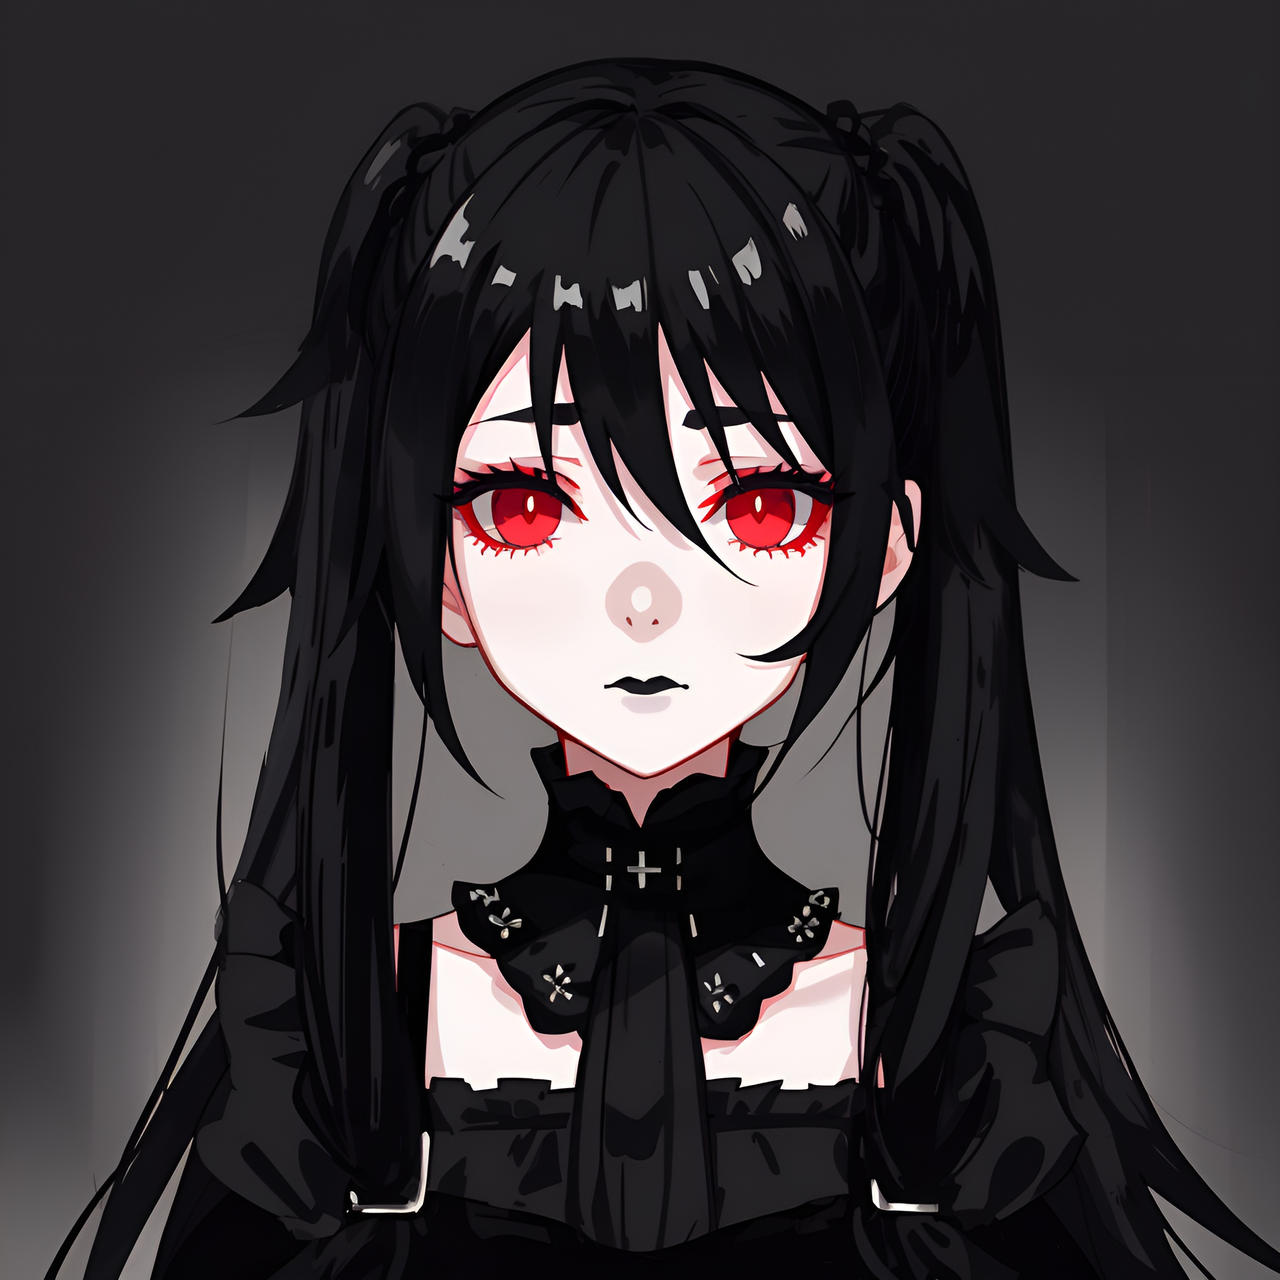 Anime dark skin girl yandere by ShinoCsp on DeviantArt